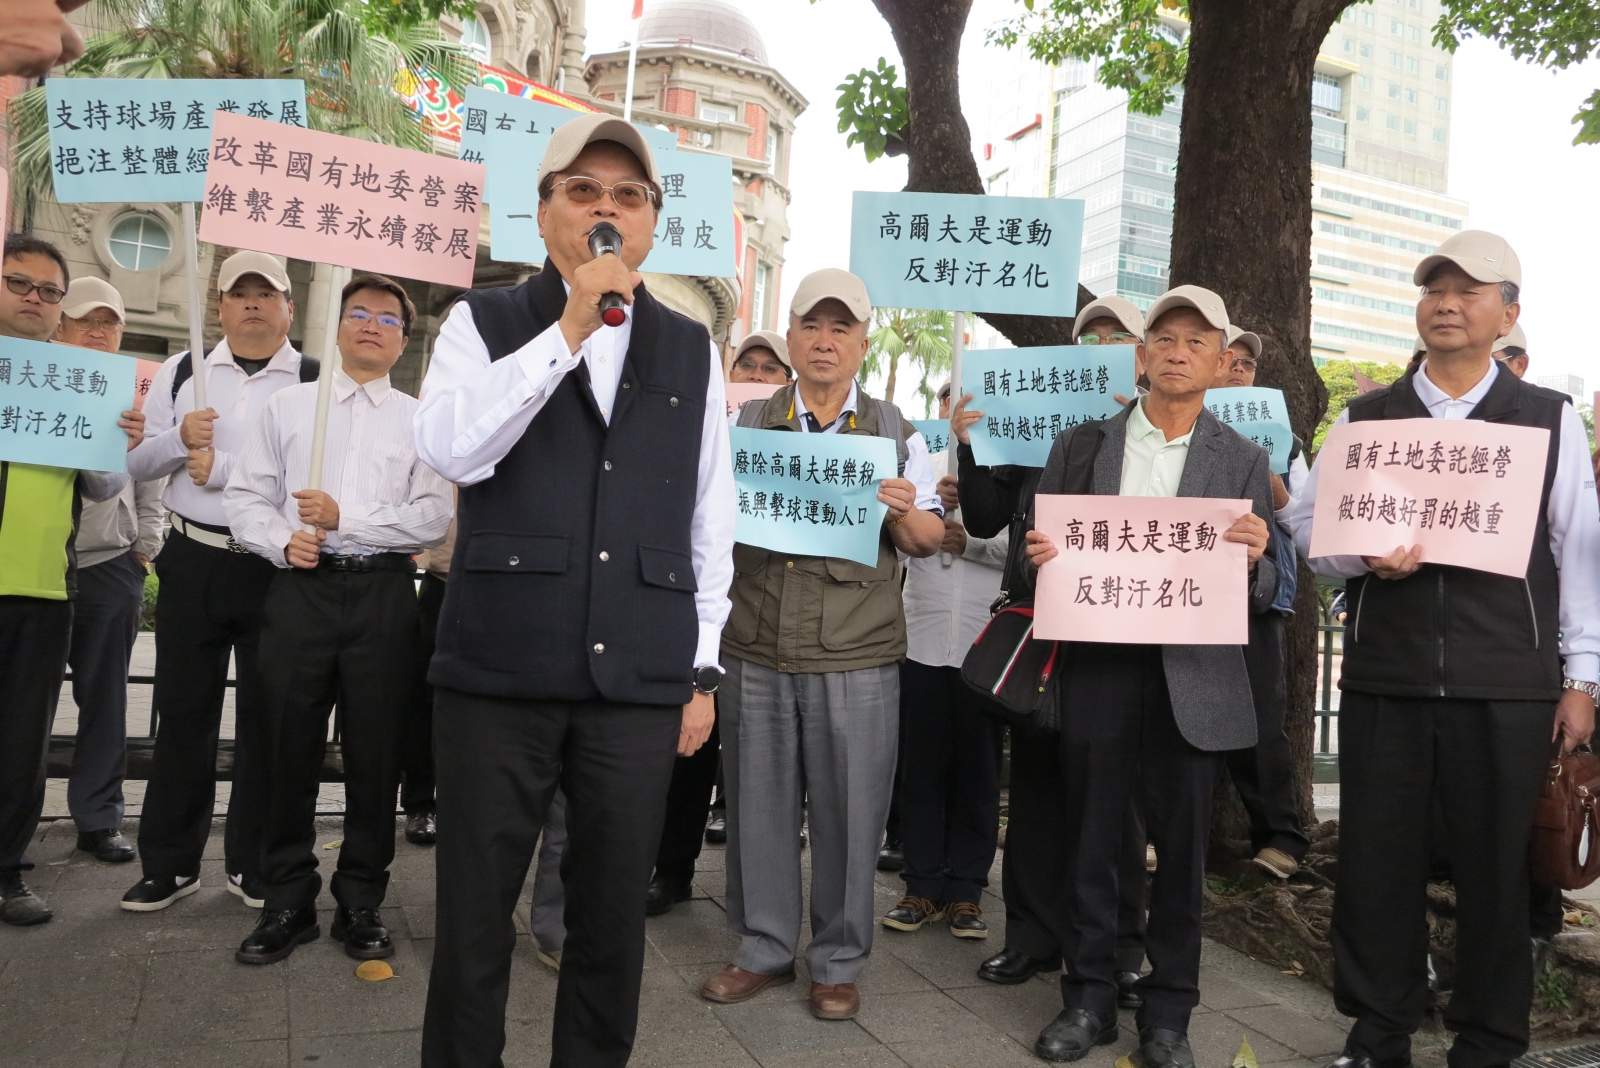 蘇慶琅理事長帶領球場業者及專家學者前往監察院大門口抗議